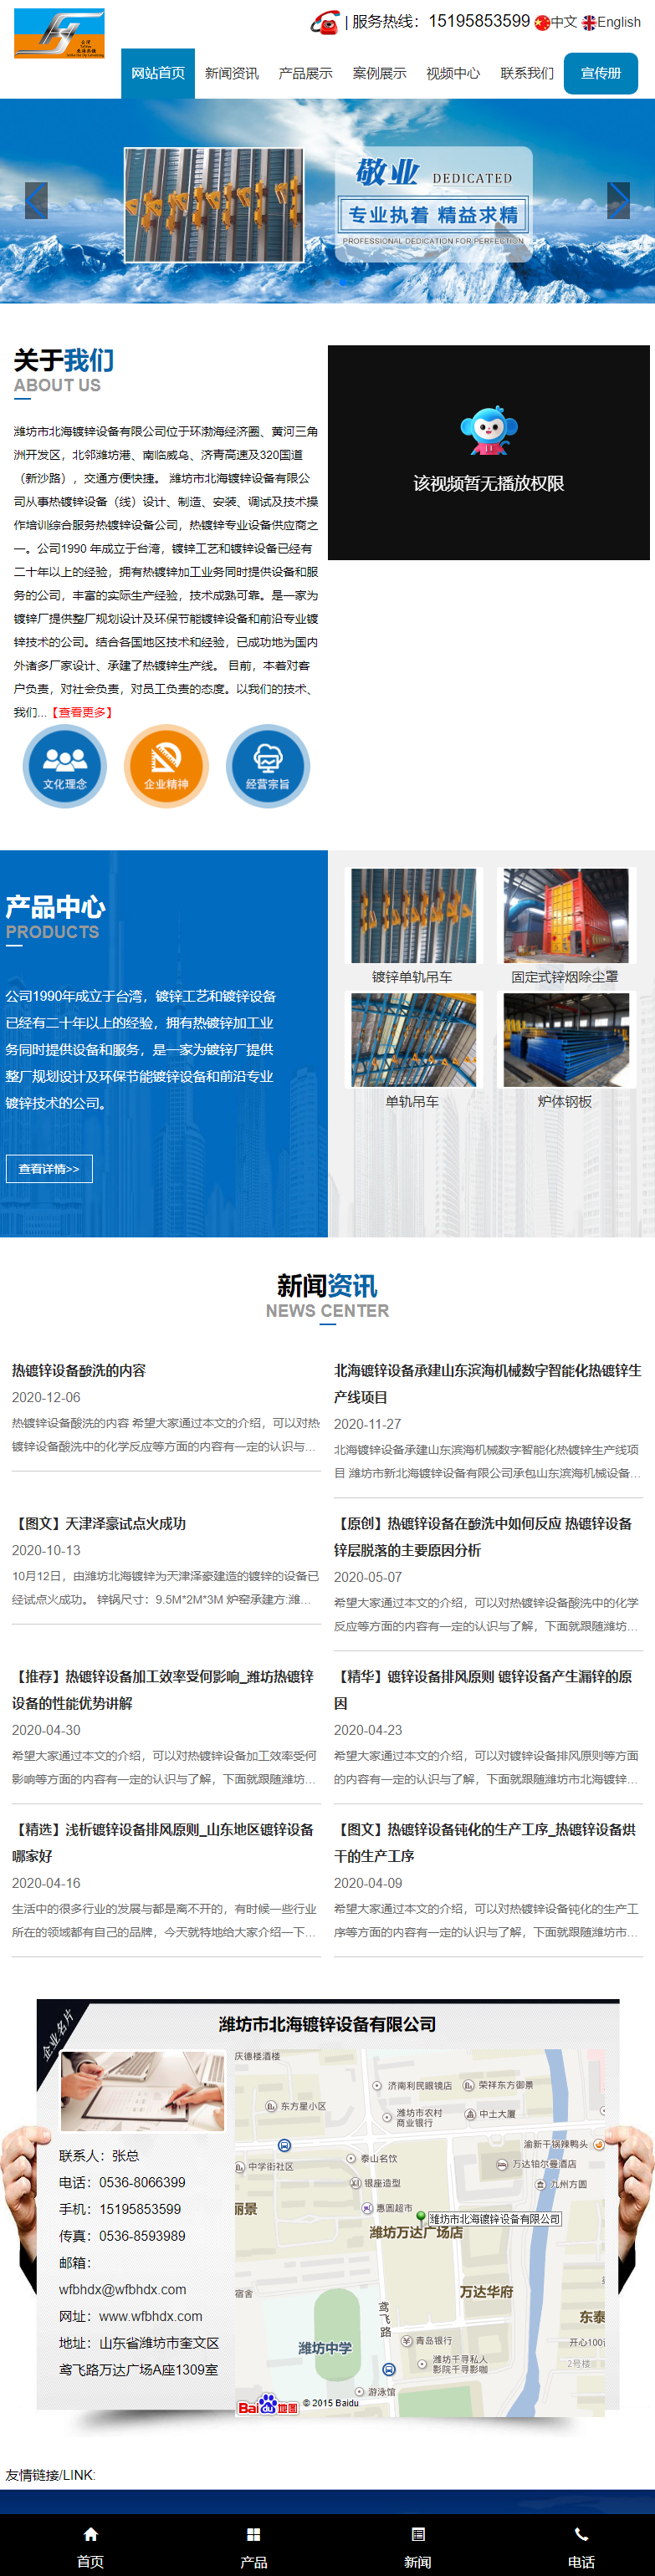 潍坊市新北海镀锌设备有限公司网站案例